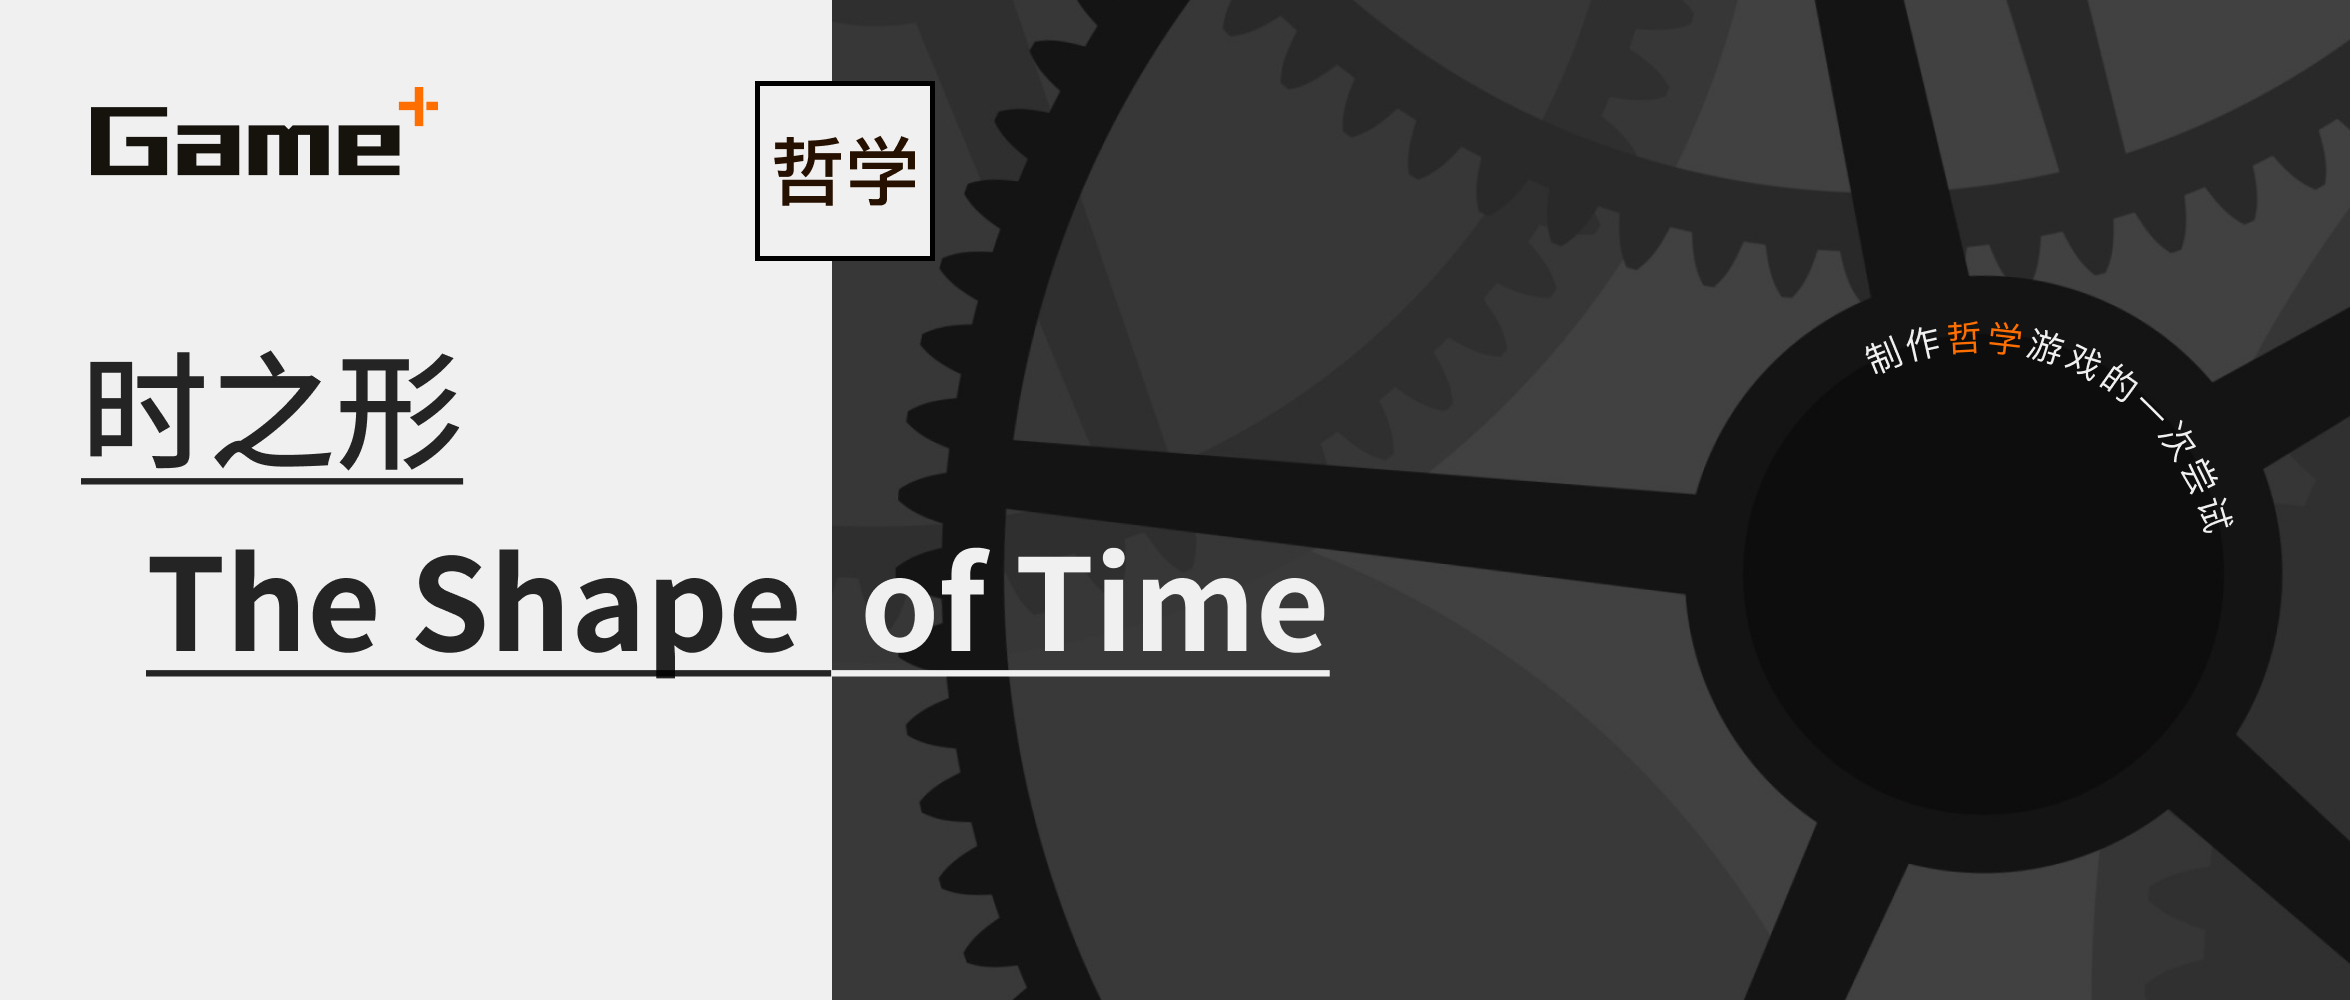 时间是什么形状？「Gameplus 游戏+」第二款作品《时之形》概览